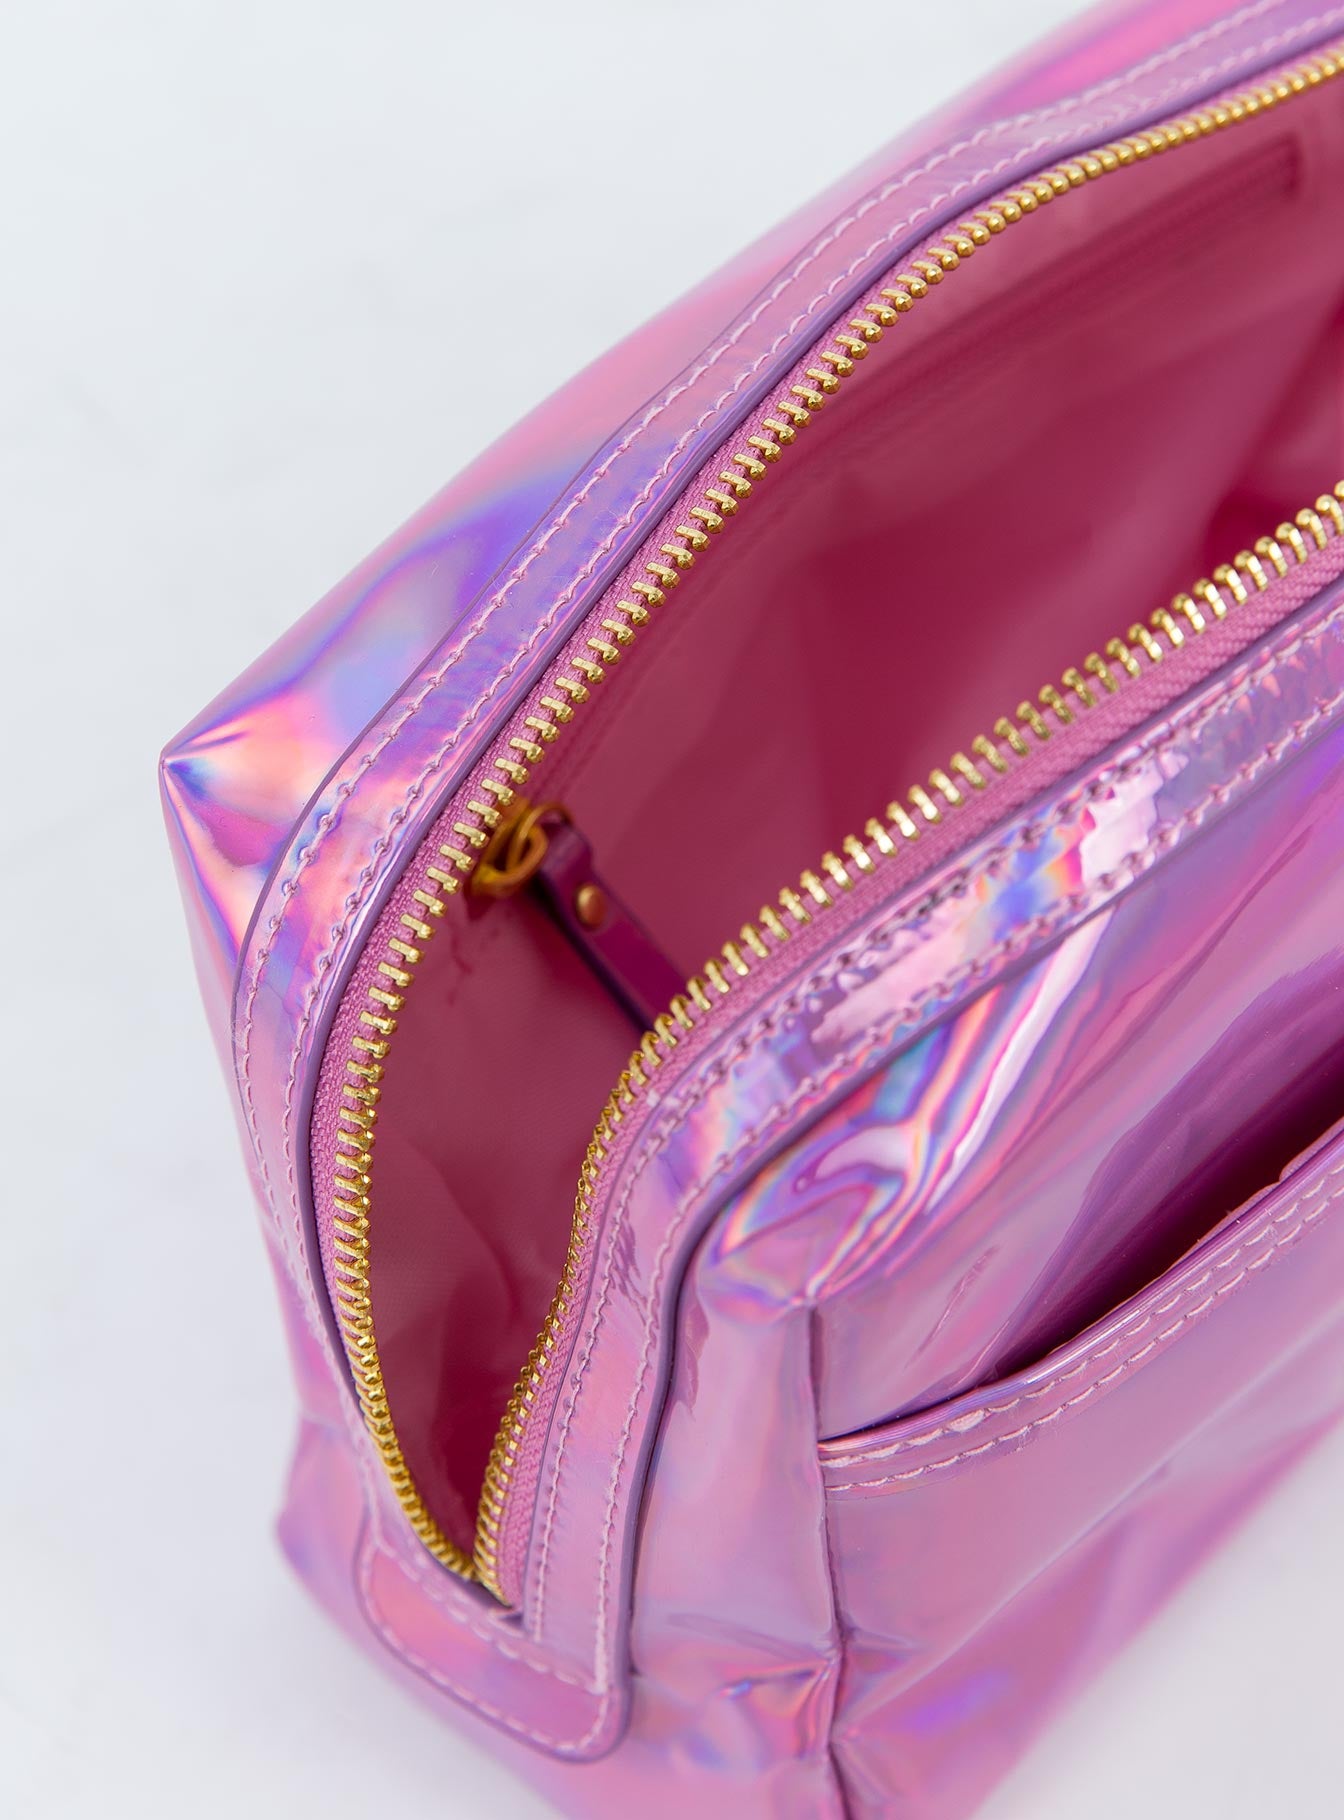 Jeffree Star Cosmetics Makeup Bag Pink – Princess Polly AUS